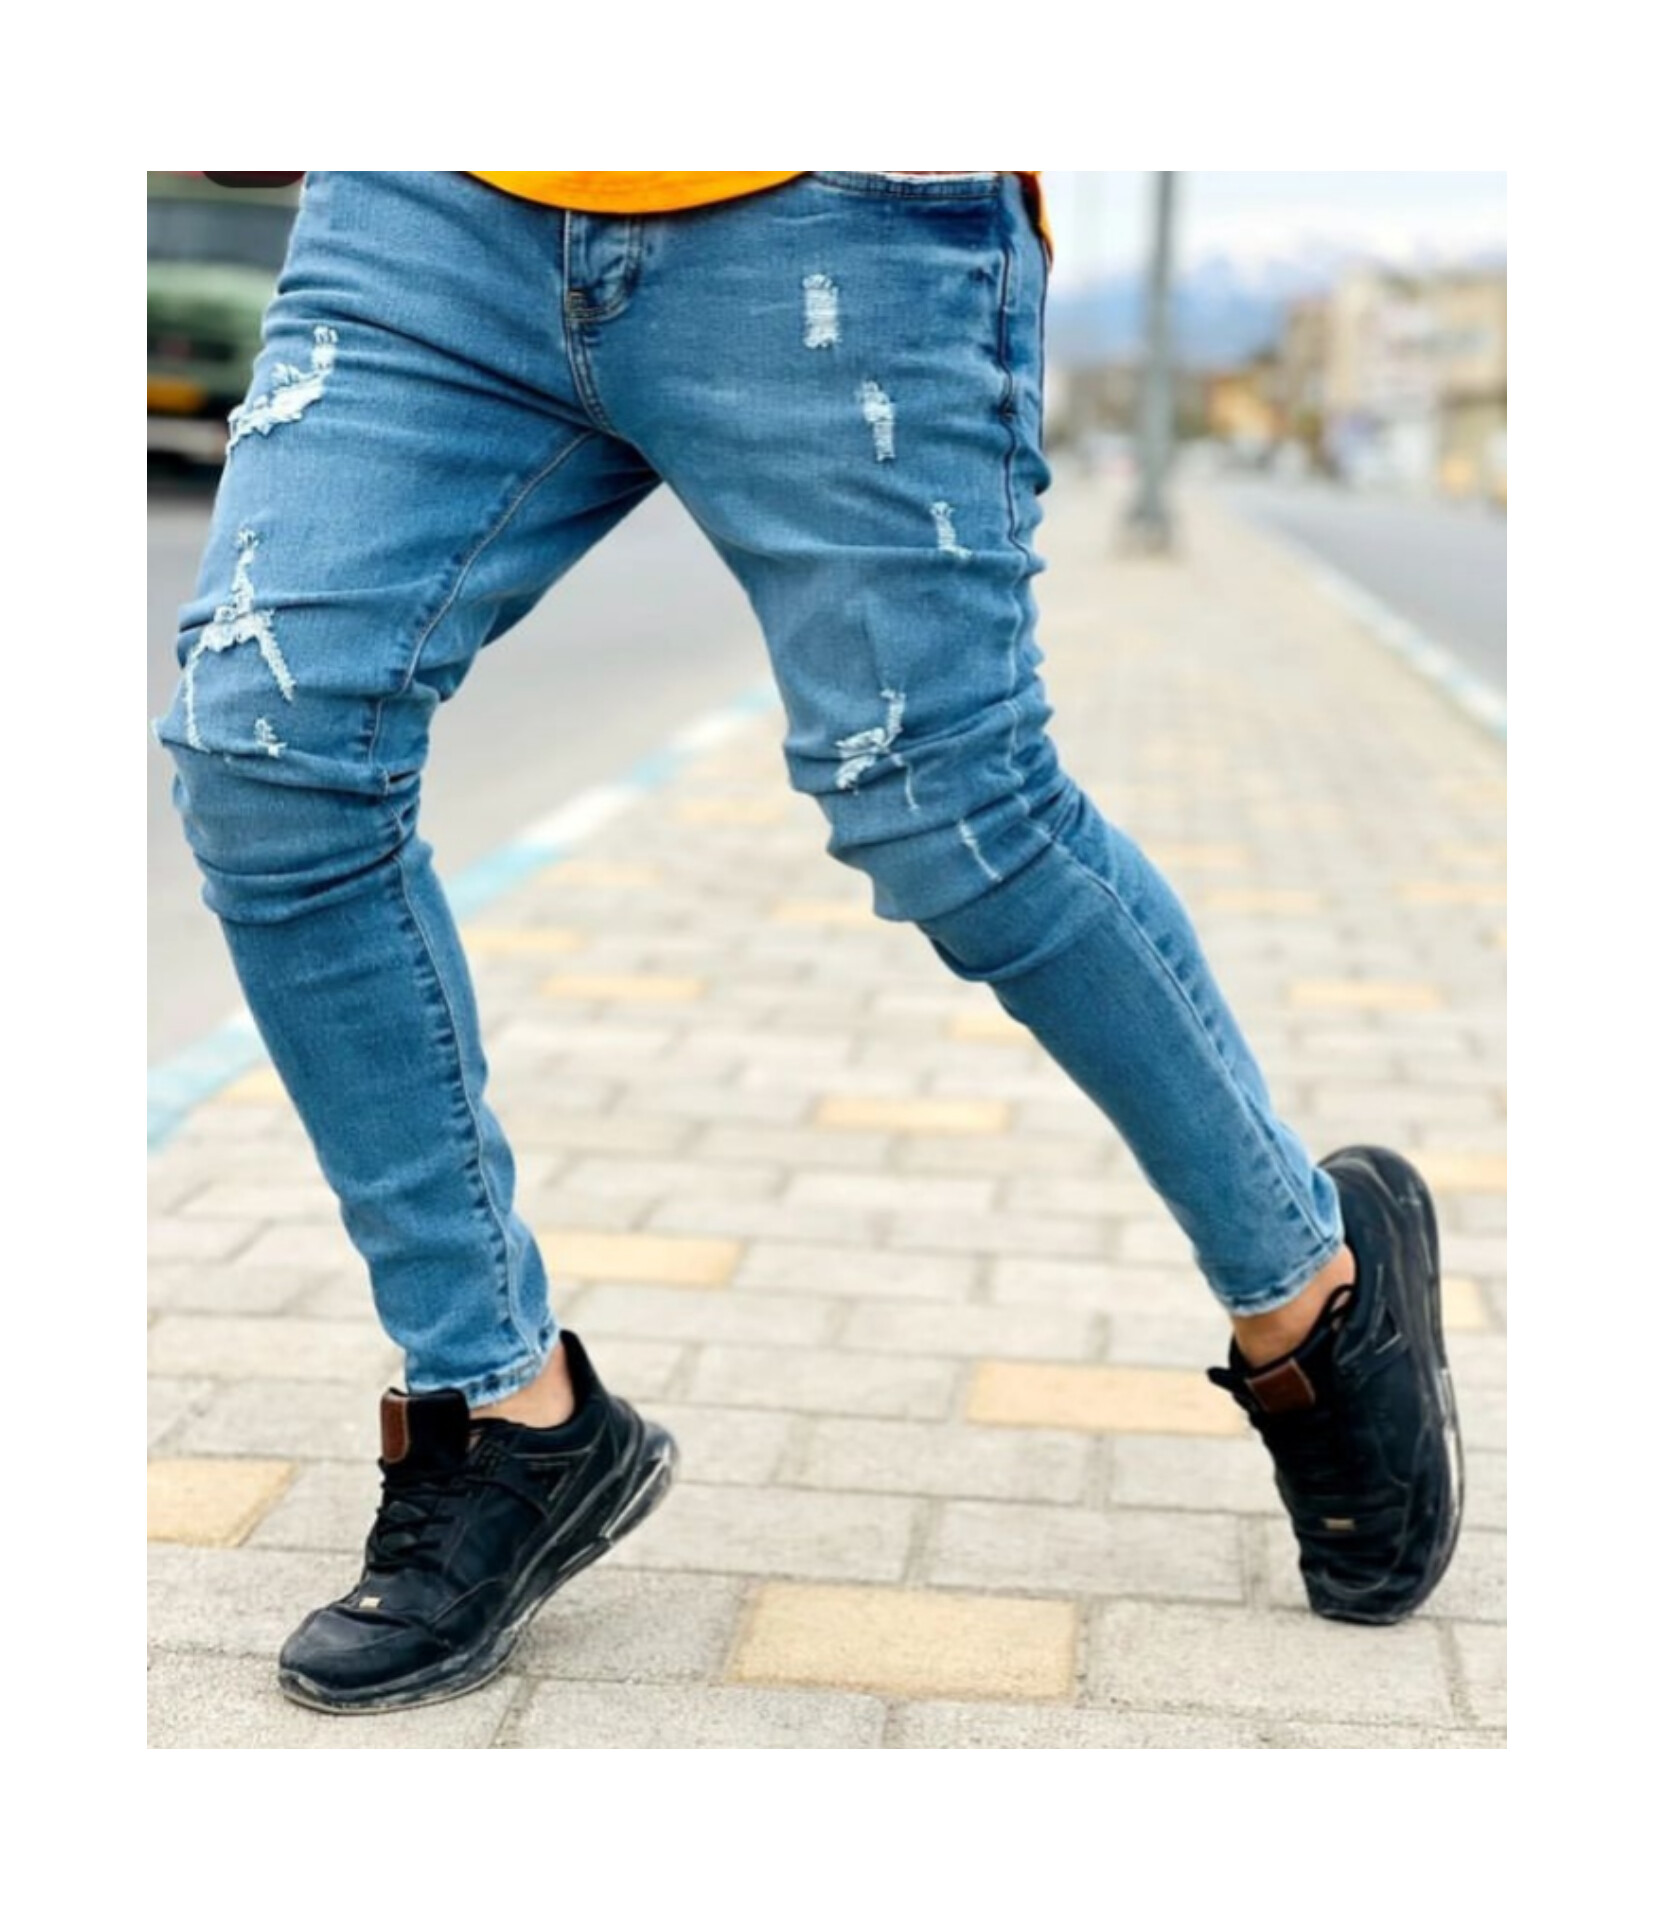 1Skinny Turkish zap jeans